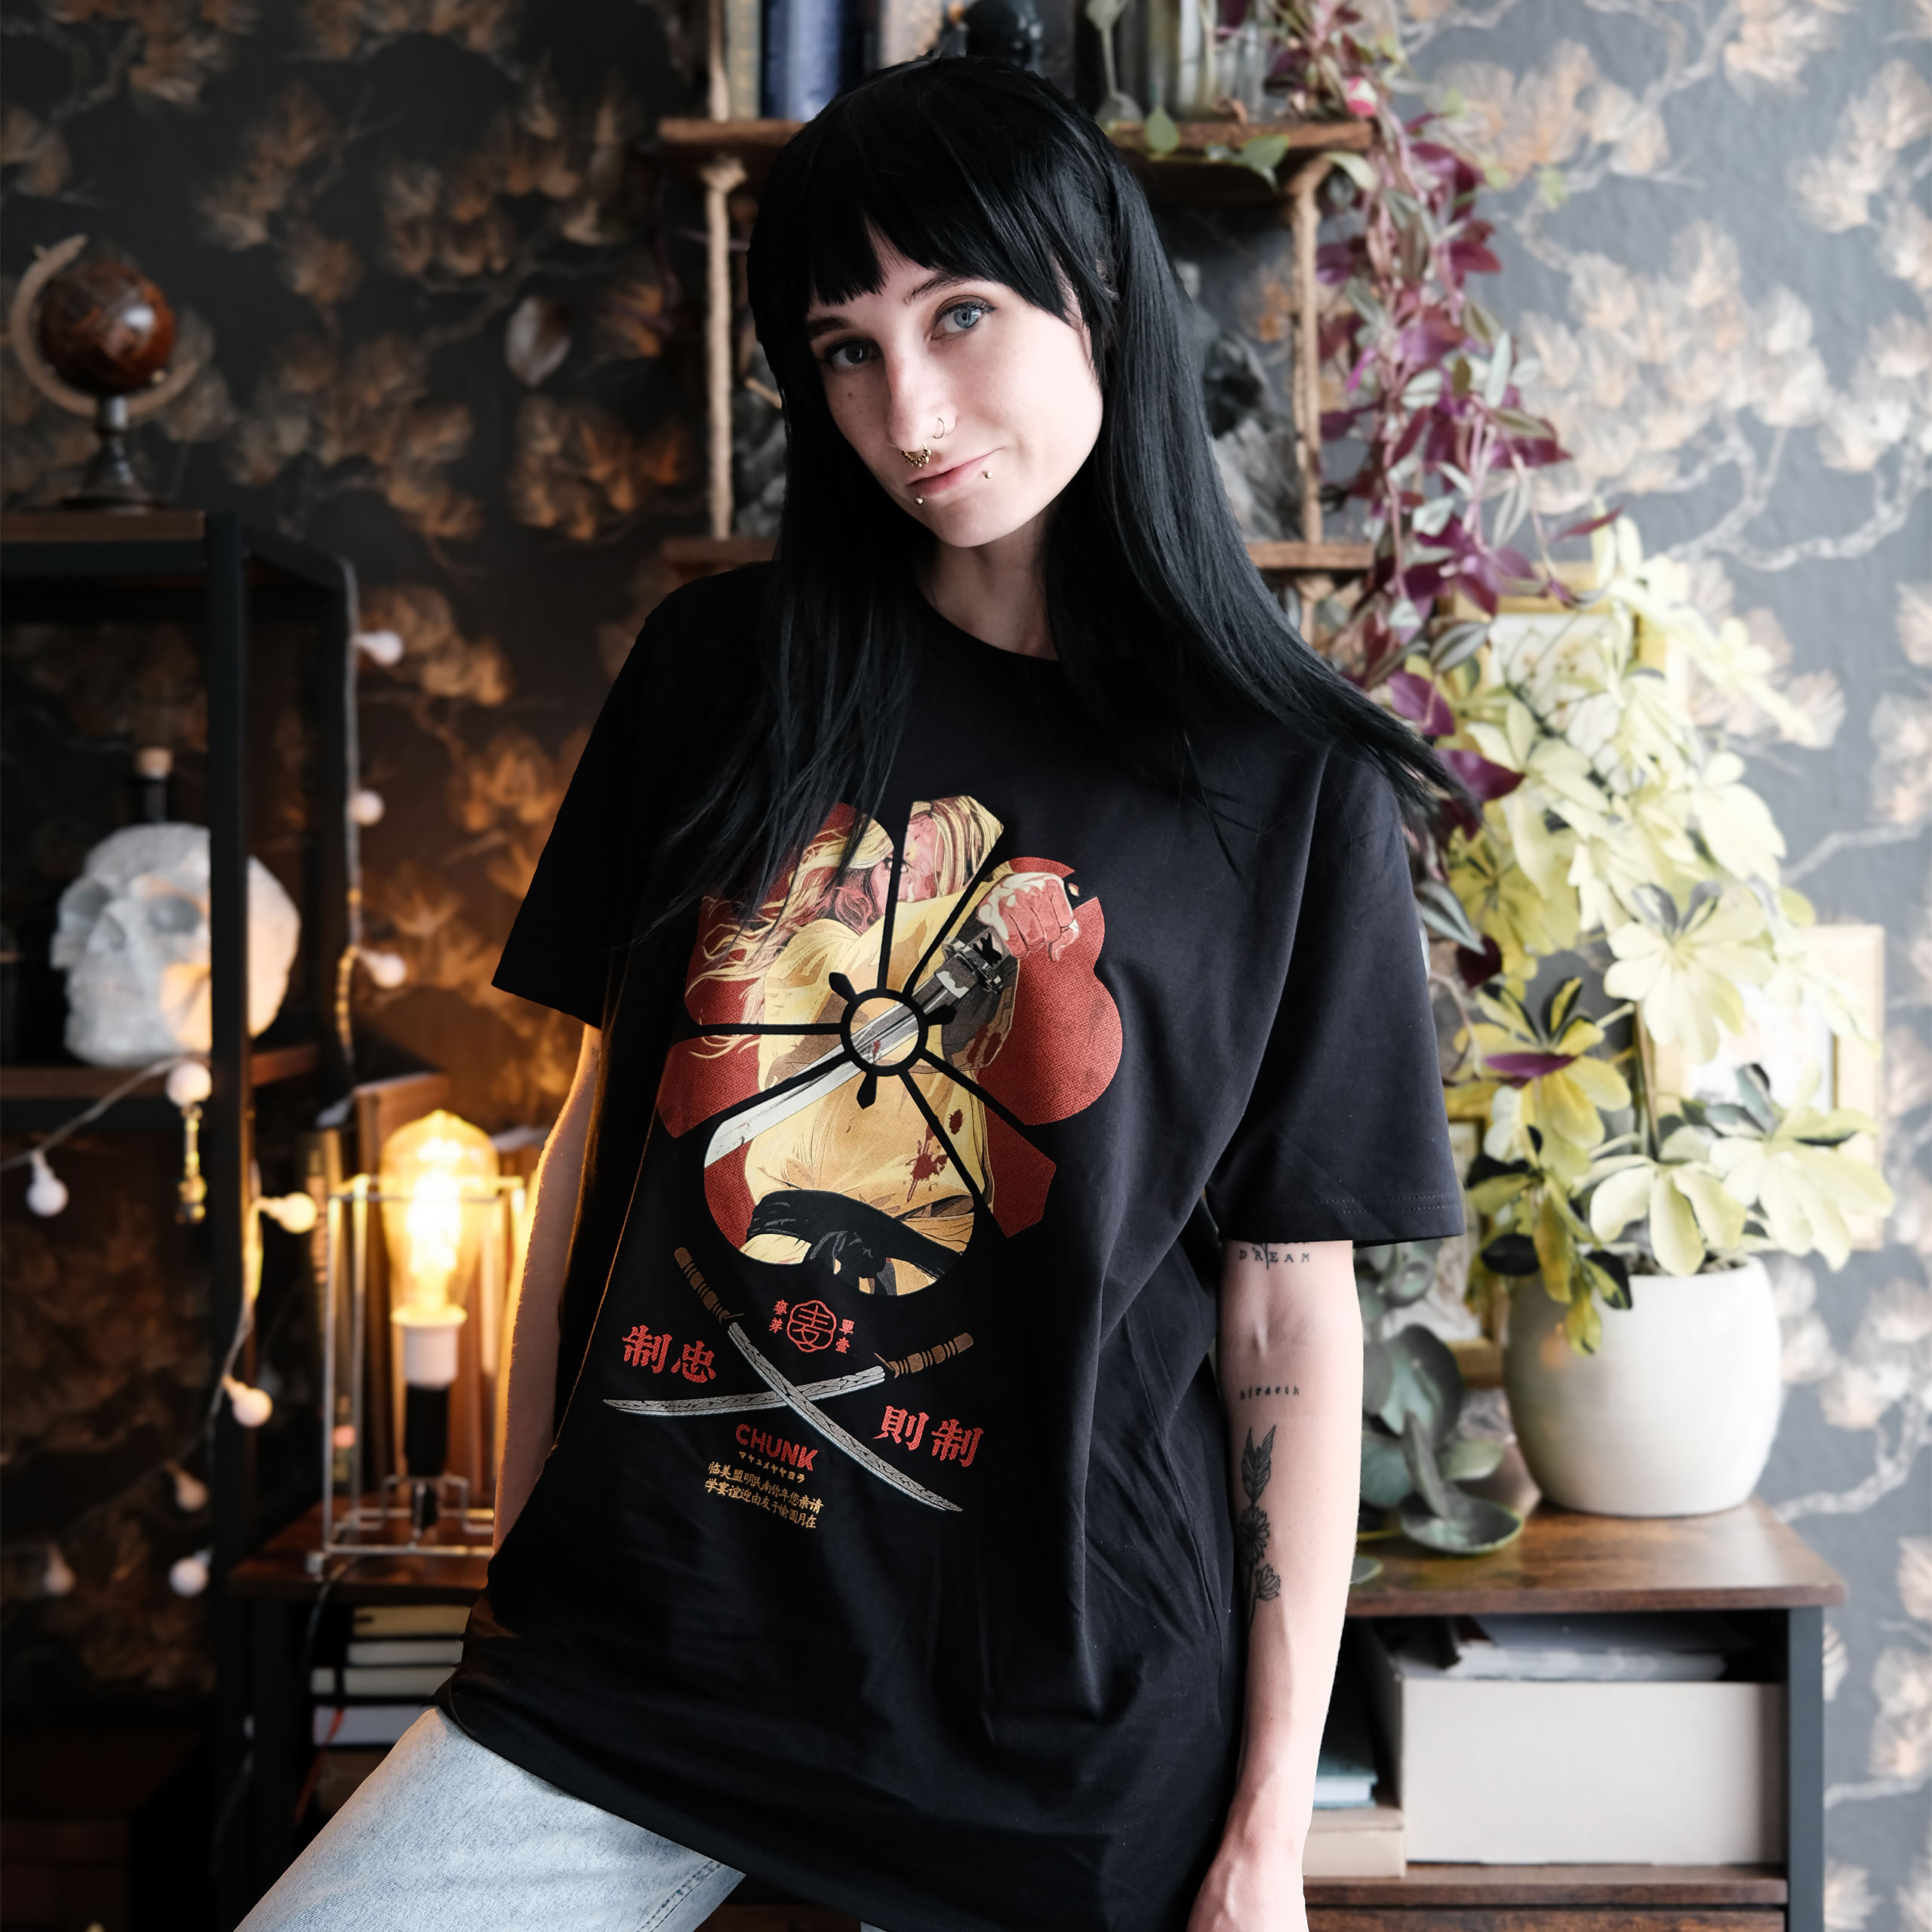 Female Assassin T-Shirt voor Kill Bill Fans Zwart